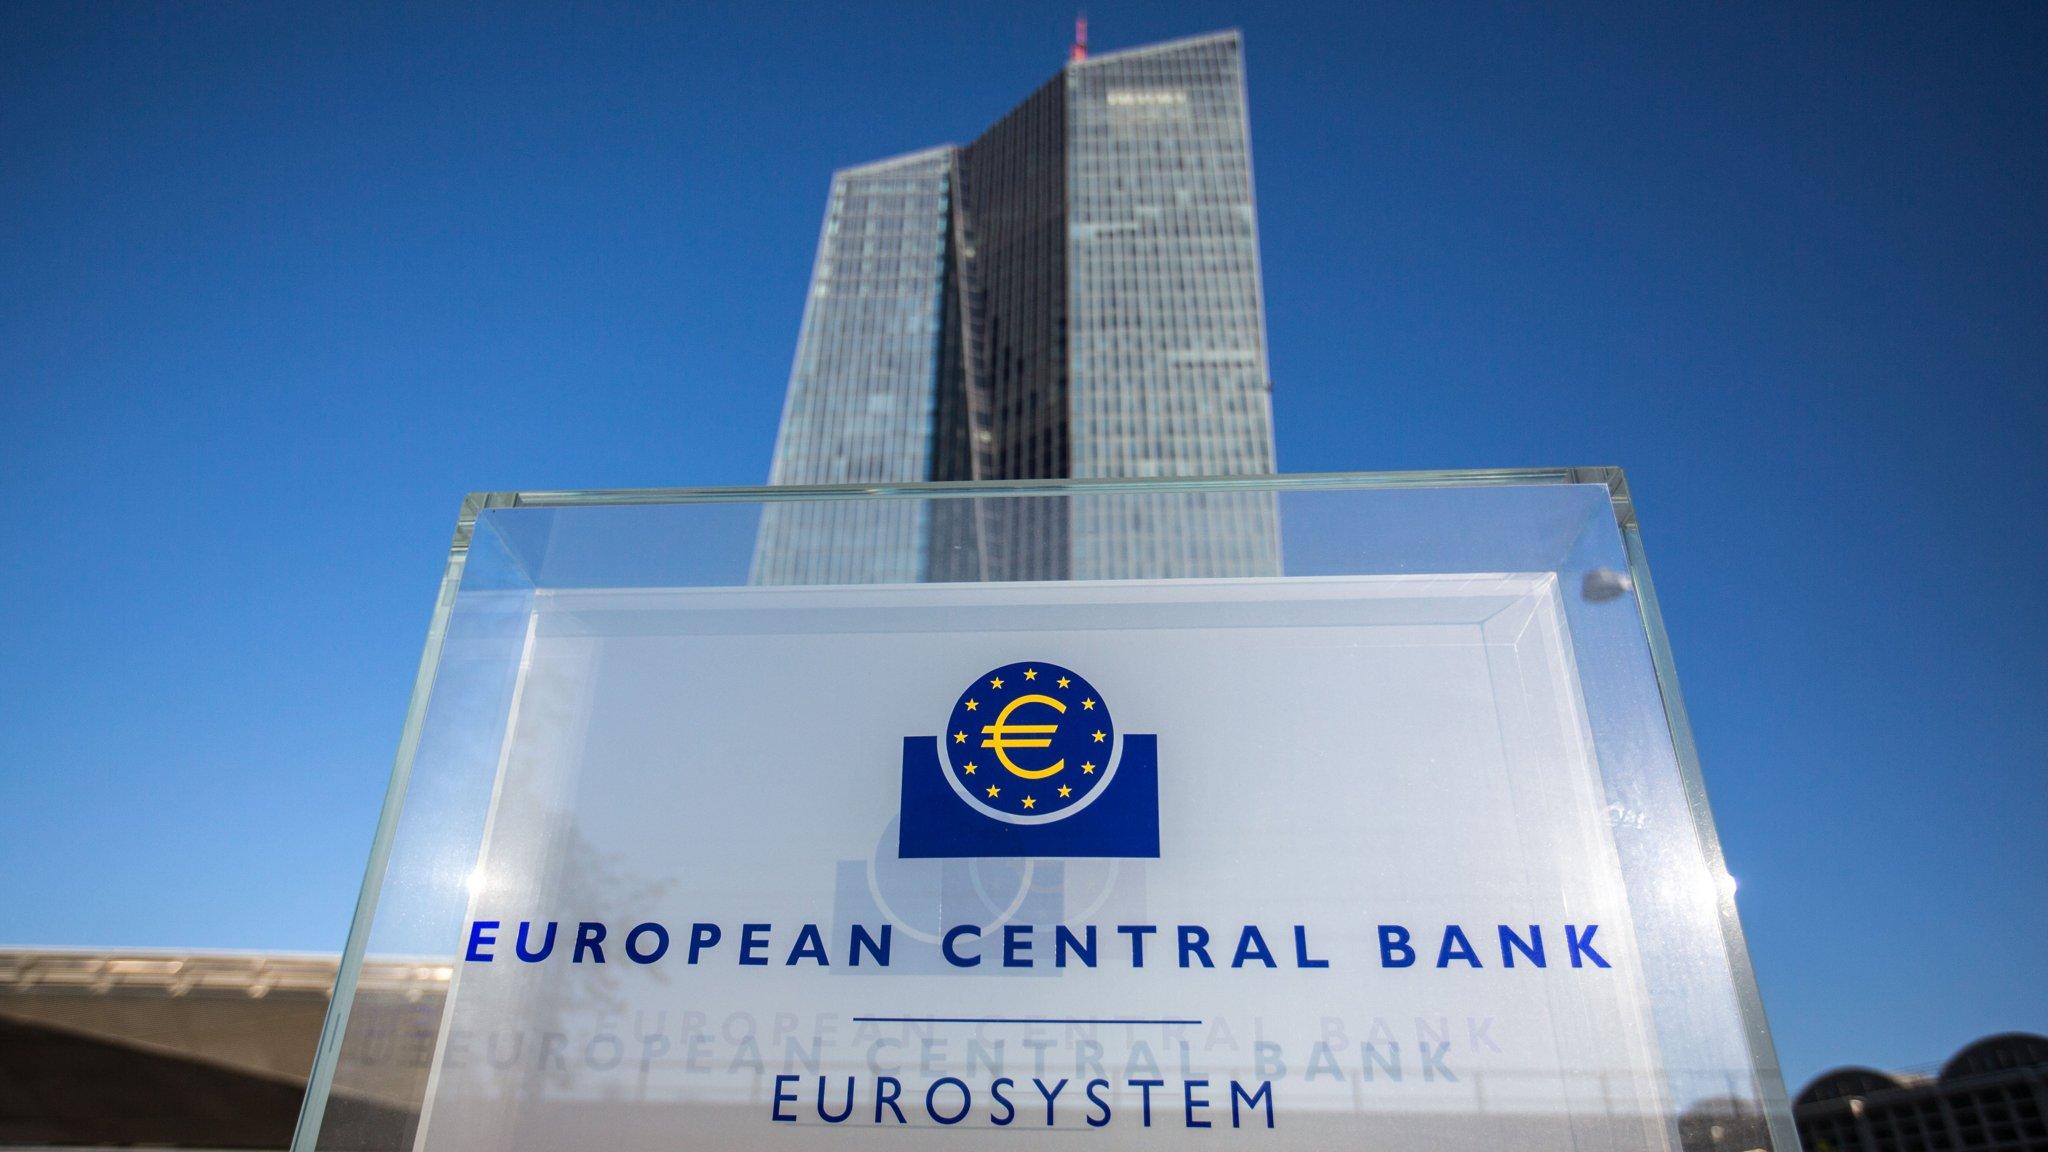 Một tương lai tươi sáng phía trước với châu Âu sẽ ảnh hưởng thế nào đến chính sách của ECB